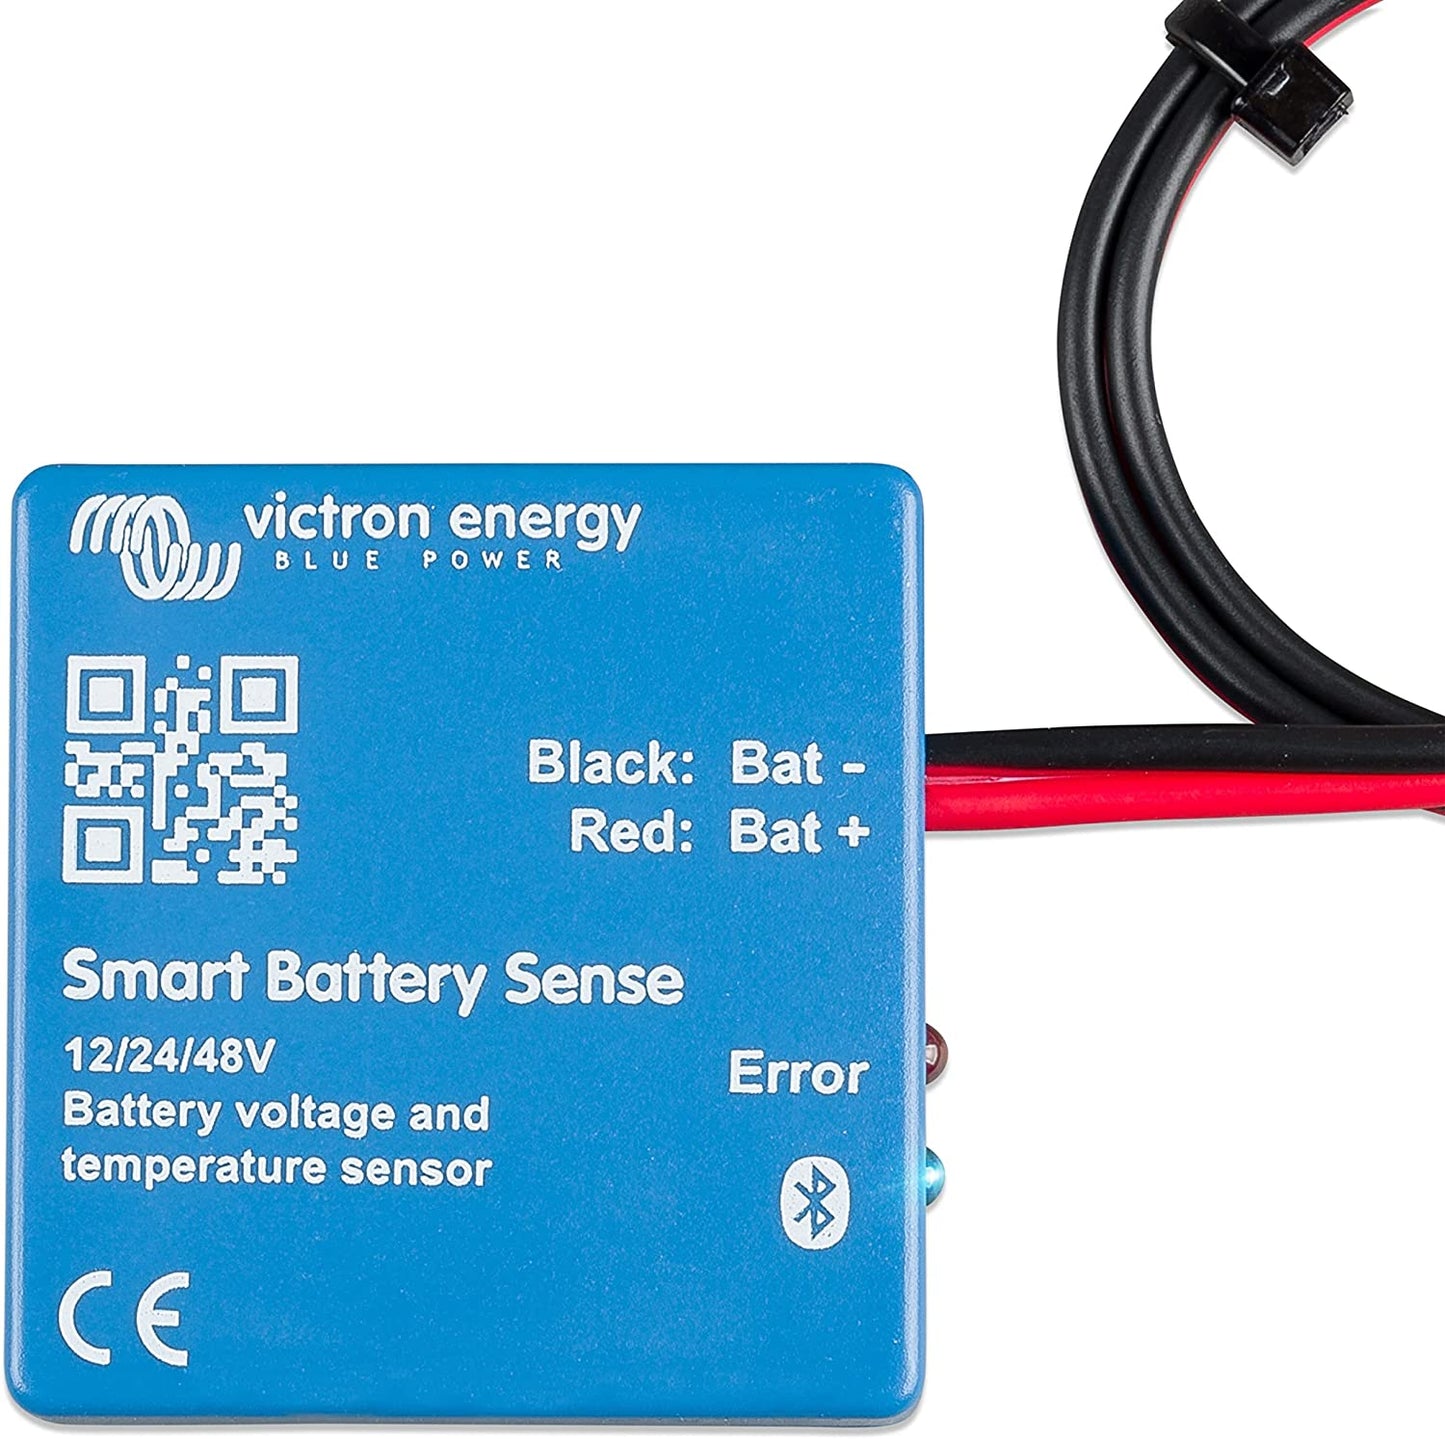 Smart Battery Sense long range (up to 10m) SBS050150200